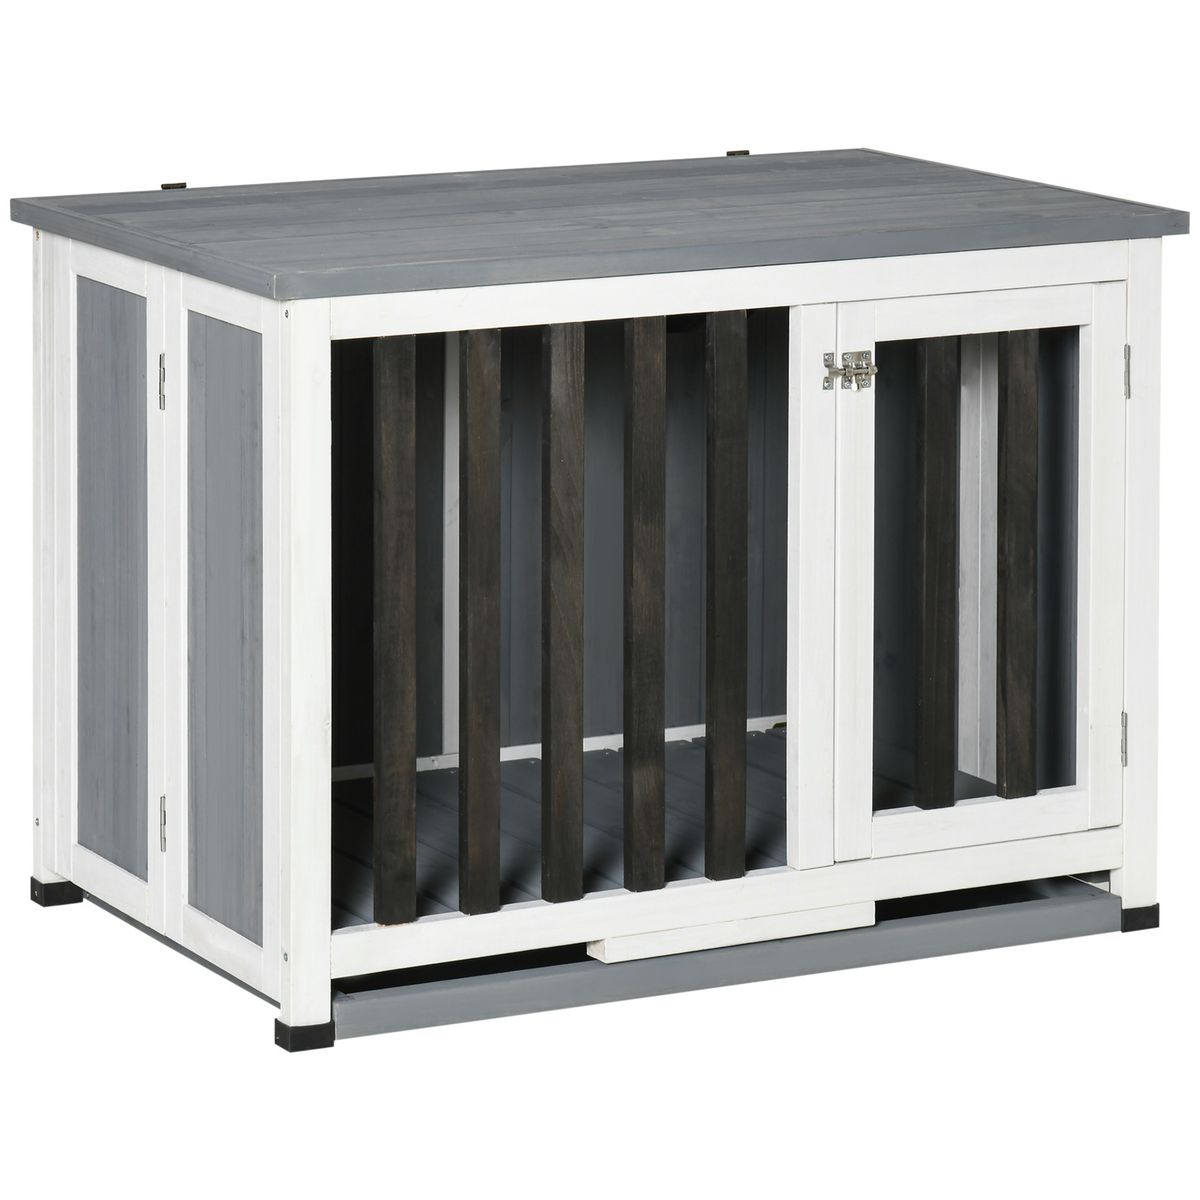 PAWHUT Cage pour chien animaux pliable dim. 84L x 51l x 61H cm porte verrouillable toit ouvrant plateau déjection bois sapin gris blanc noir